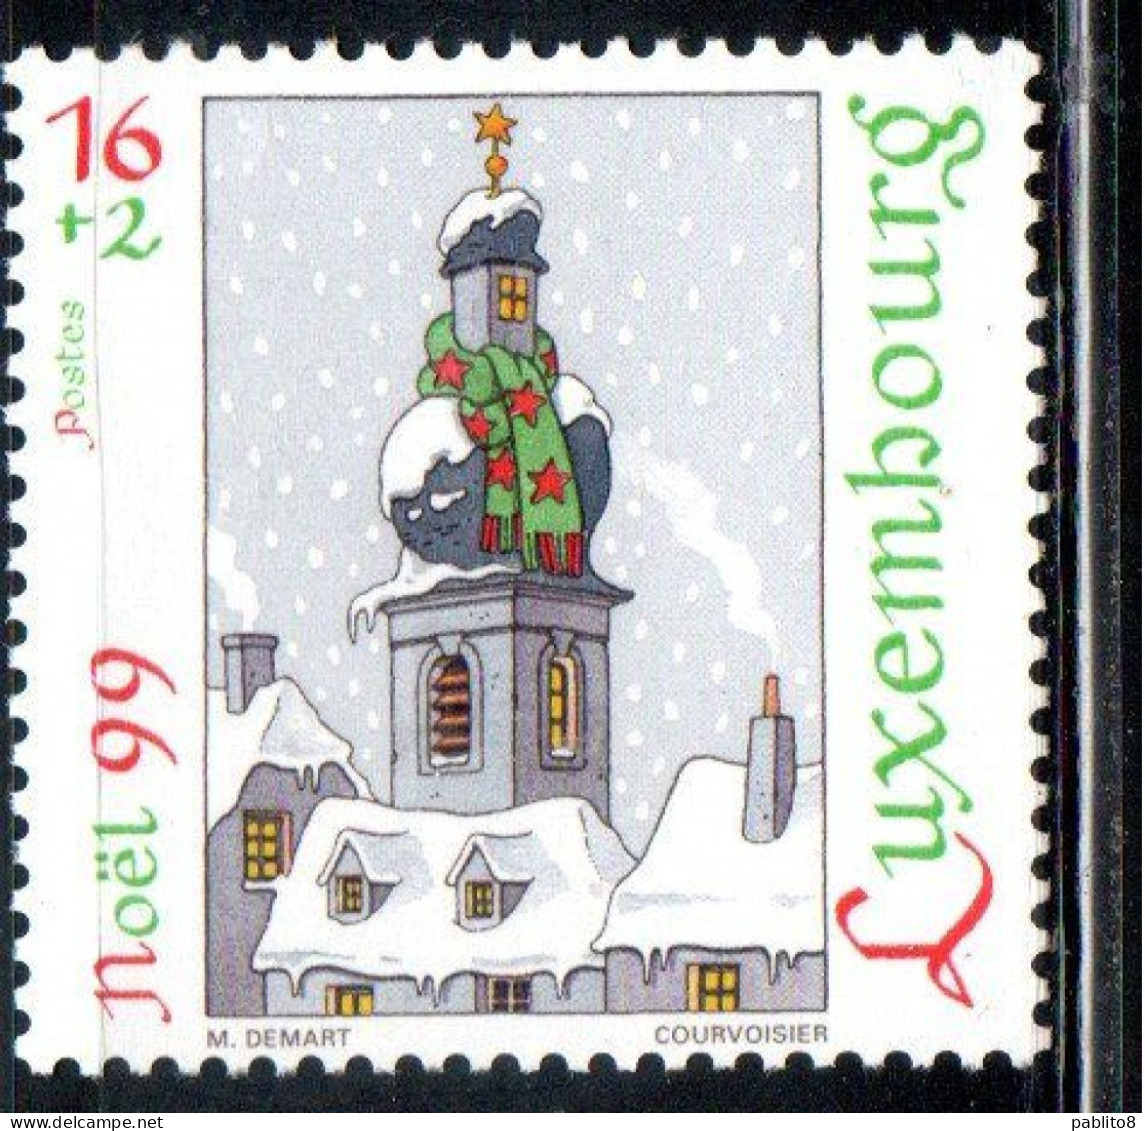 LUXEMBOURG LUSSEMBURGO 1999 CHRISTMAS NATALE NOEL WEIHNACHTEN NAVIDAD 16 +2 MNH - Ongebruikt